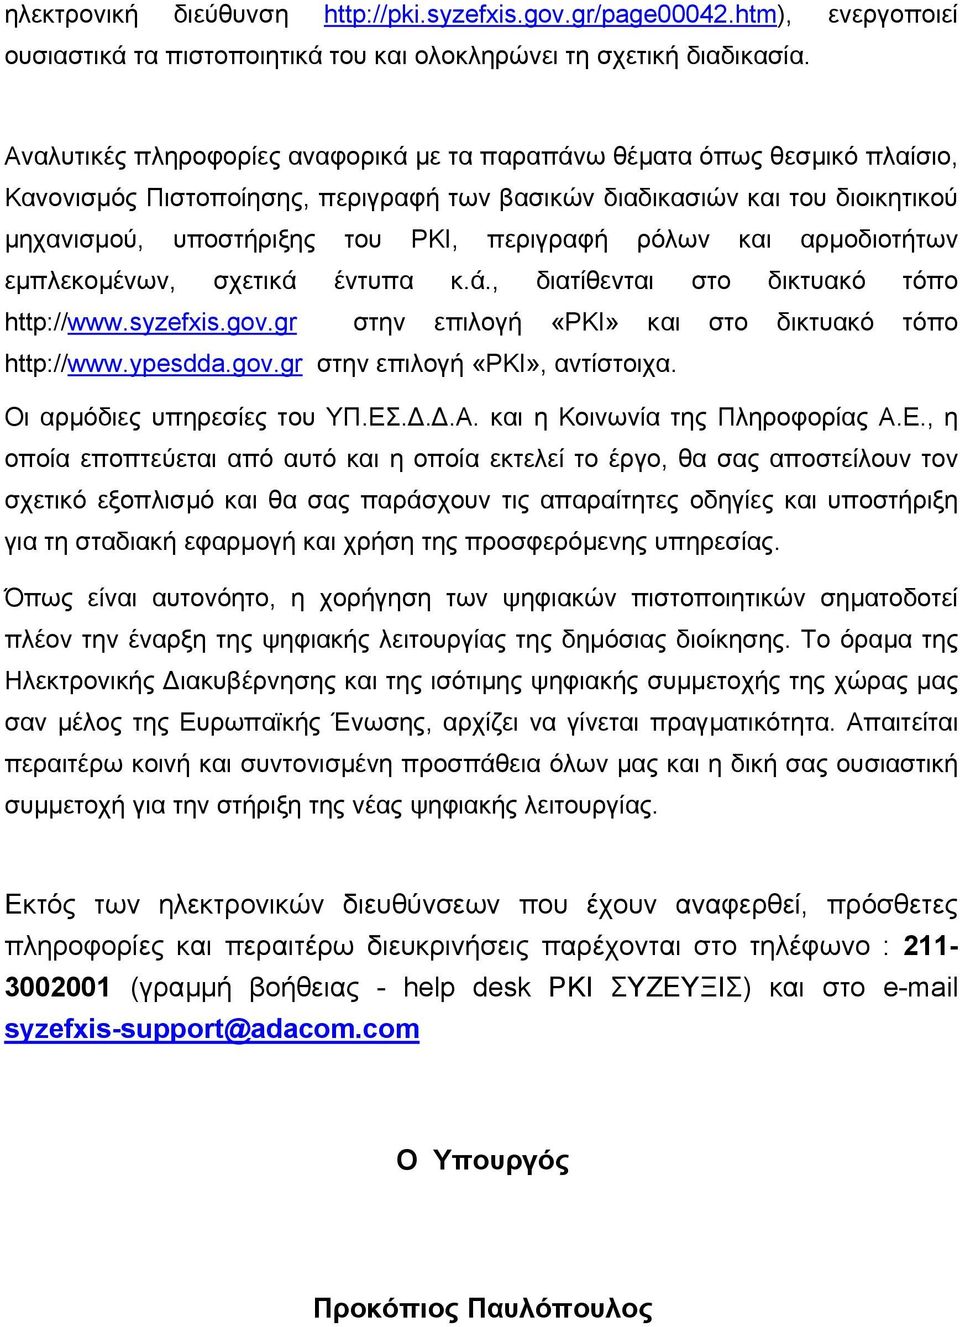 ρόλων και αρµοδιοτήτων εµπλεκοµένων, σχετικά έντυπα κ.ά., διατίθενται στο δικτυακό τόπο http://www.syzefxis.gov.gr στην επιλογή «PKI» και στο δικτυακό τόπο http://www.ypesdda.gov.gr στην επιλογή «PKI», αντίστοιχα.